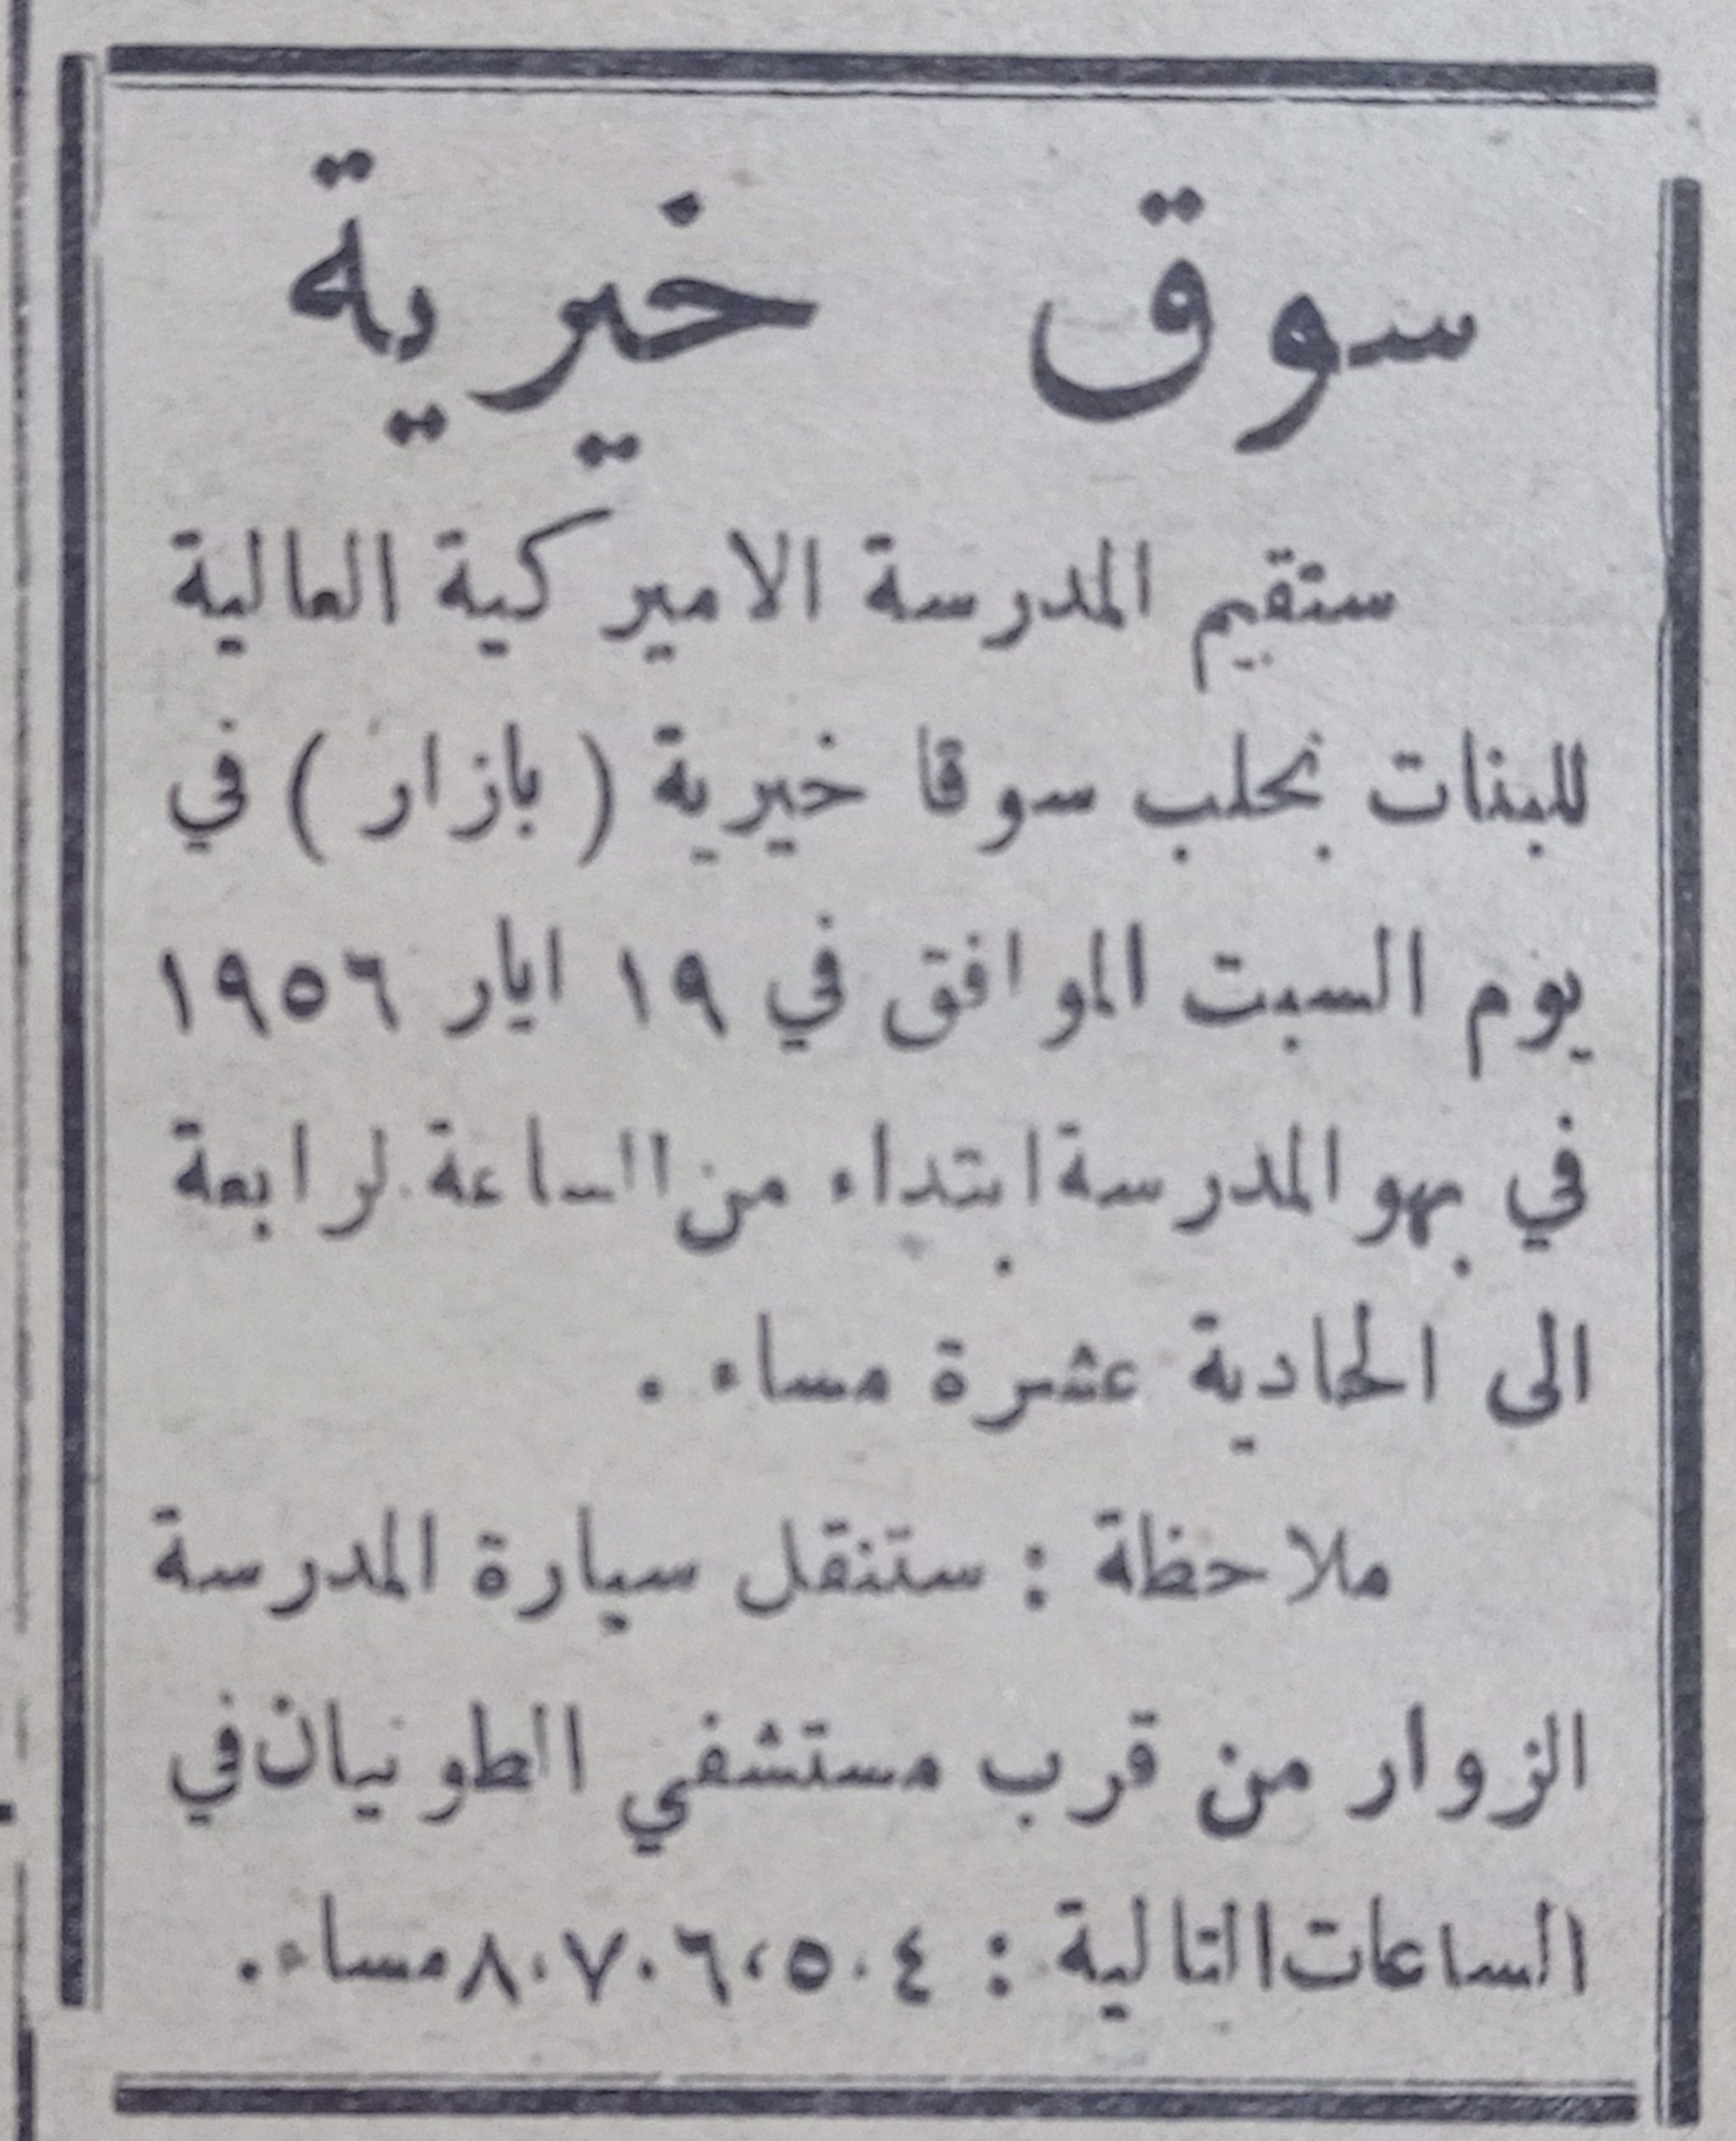 التاريخ السوري المعاصر - إعلان عن سوق خيرية في المدرسة الأمريكية للبنات في حلب عام 1956